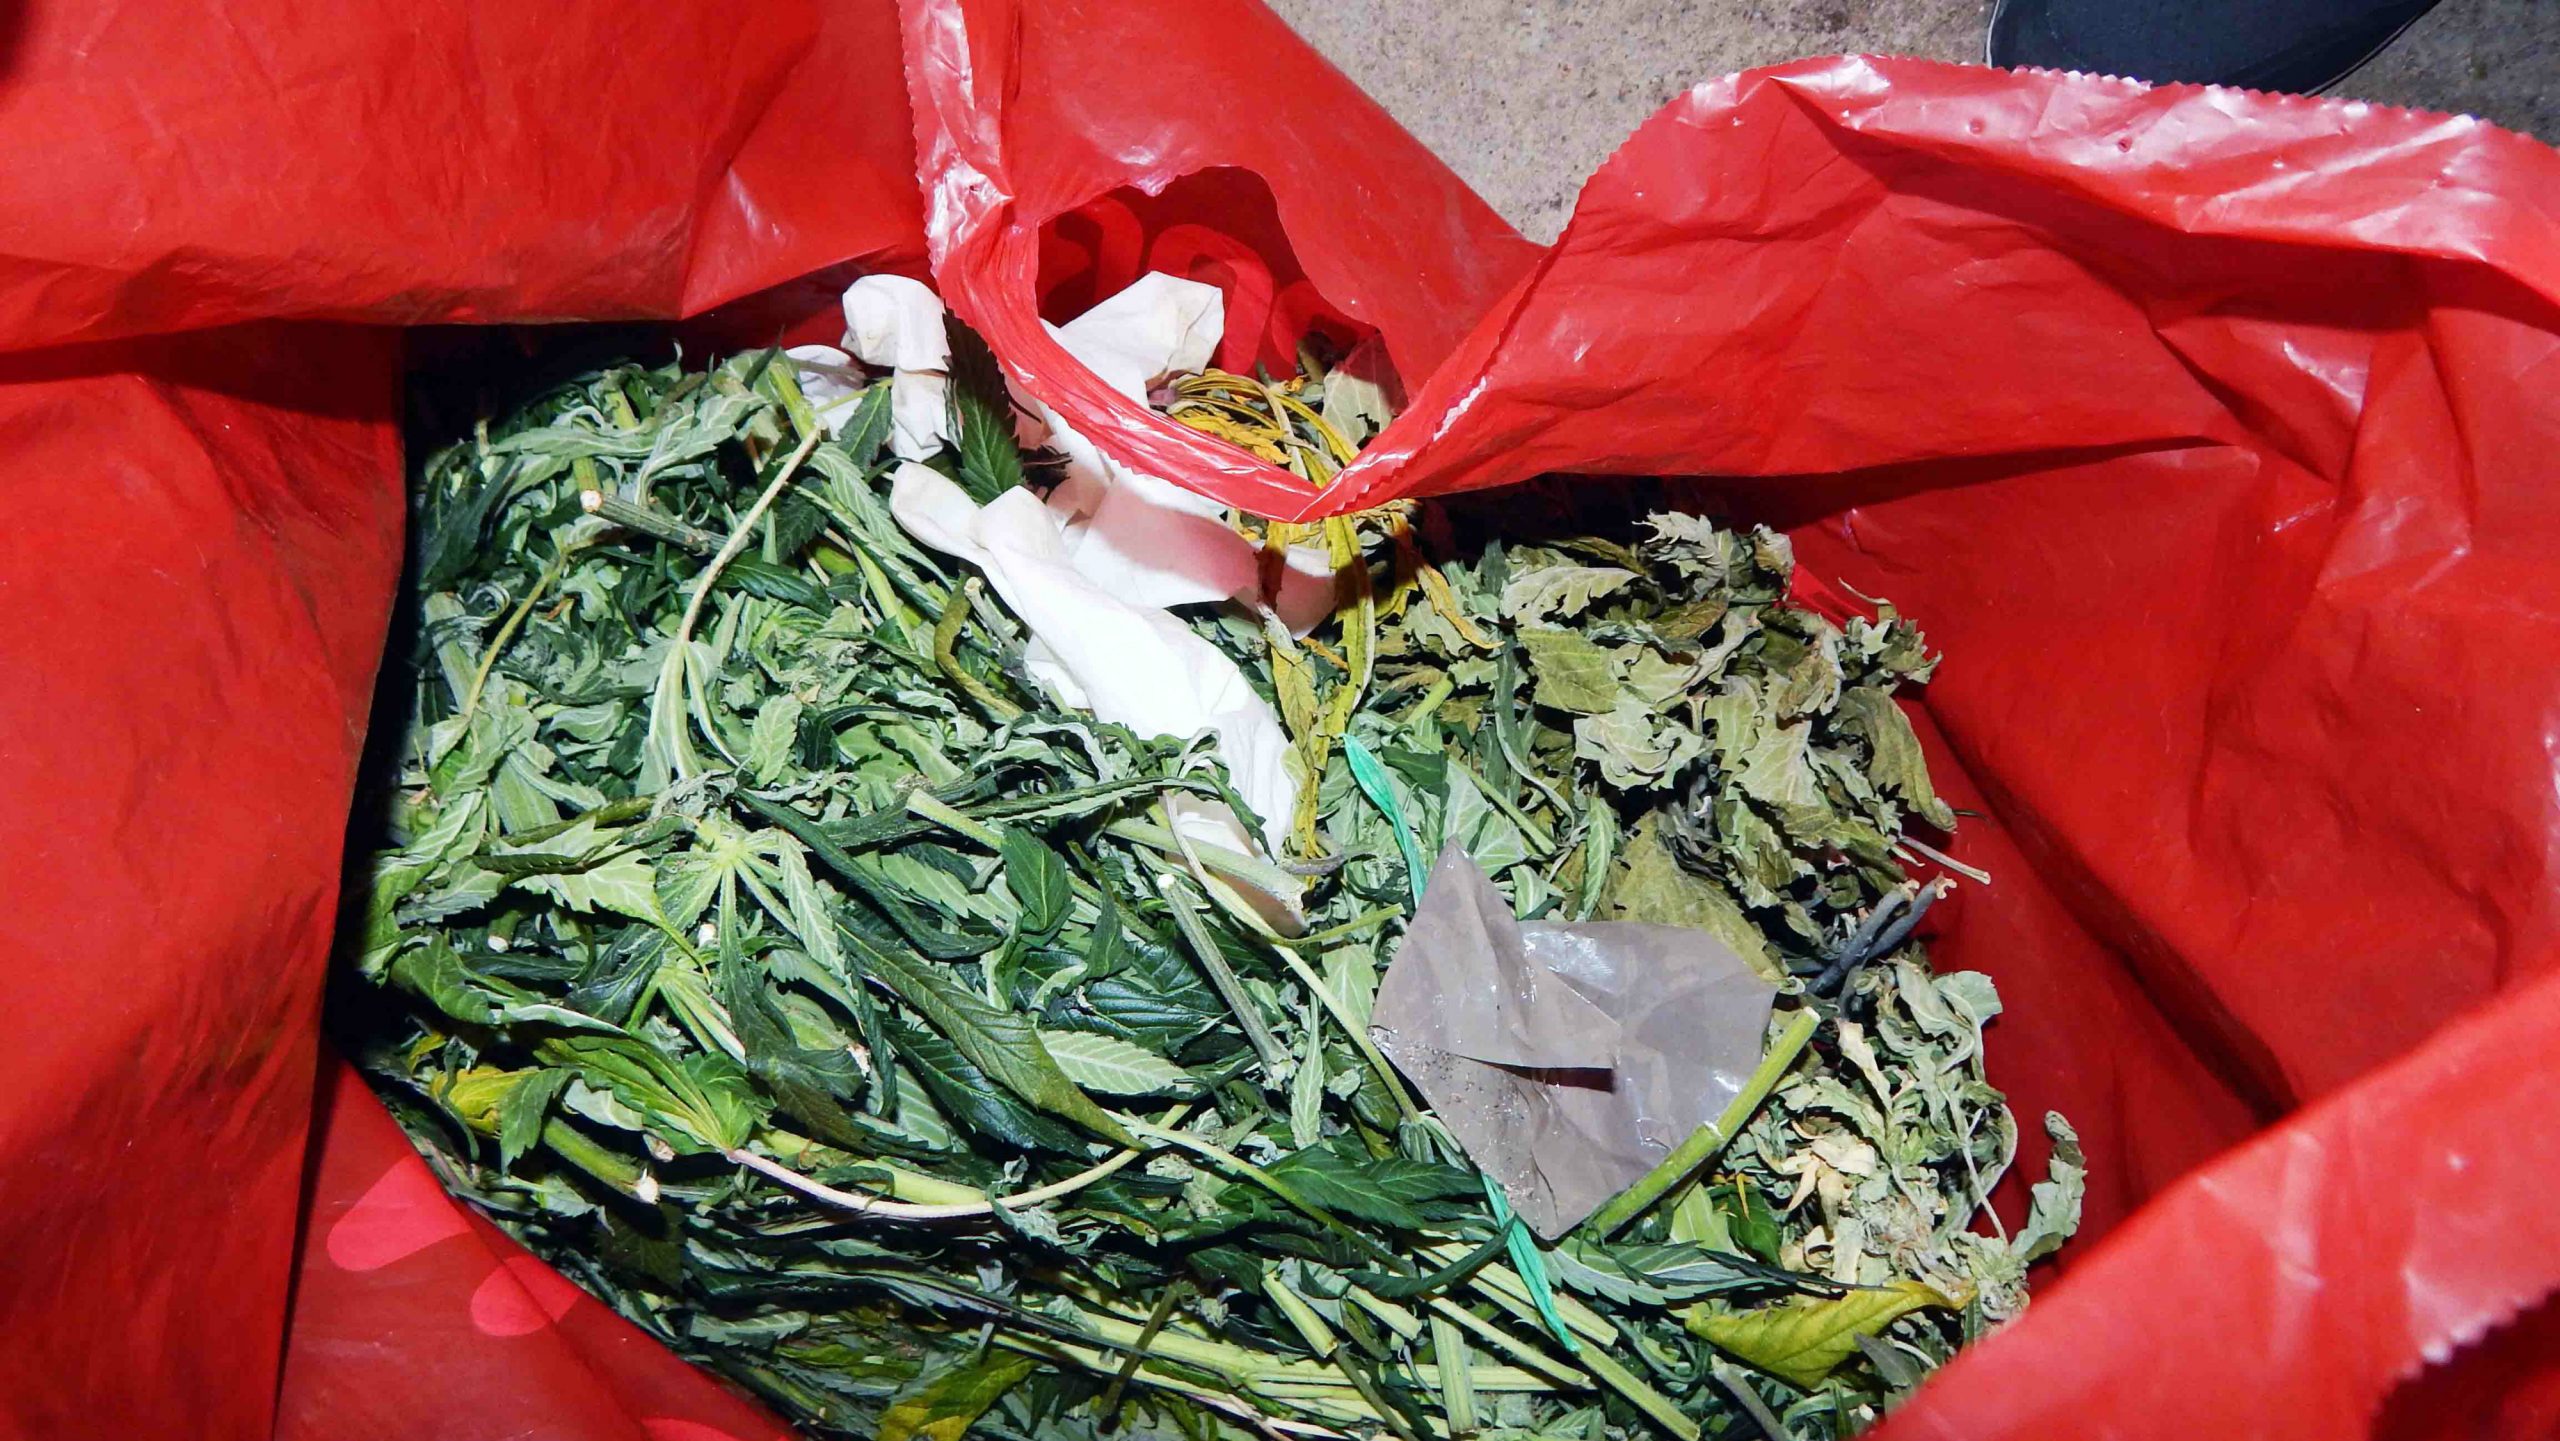 Otkrivena laboratorija za uzgoj marihuane, zaplenjeno 110 kilograma droge 1